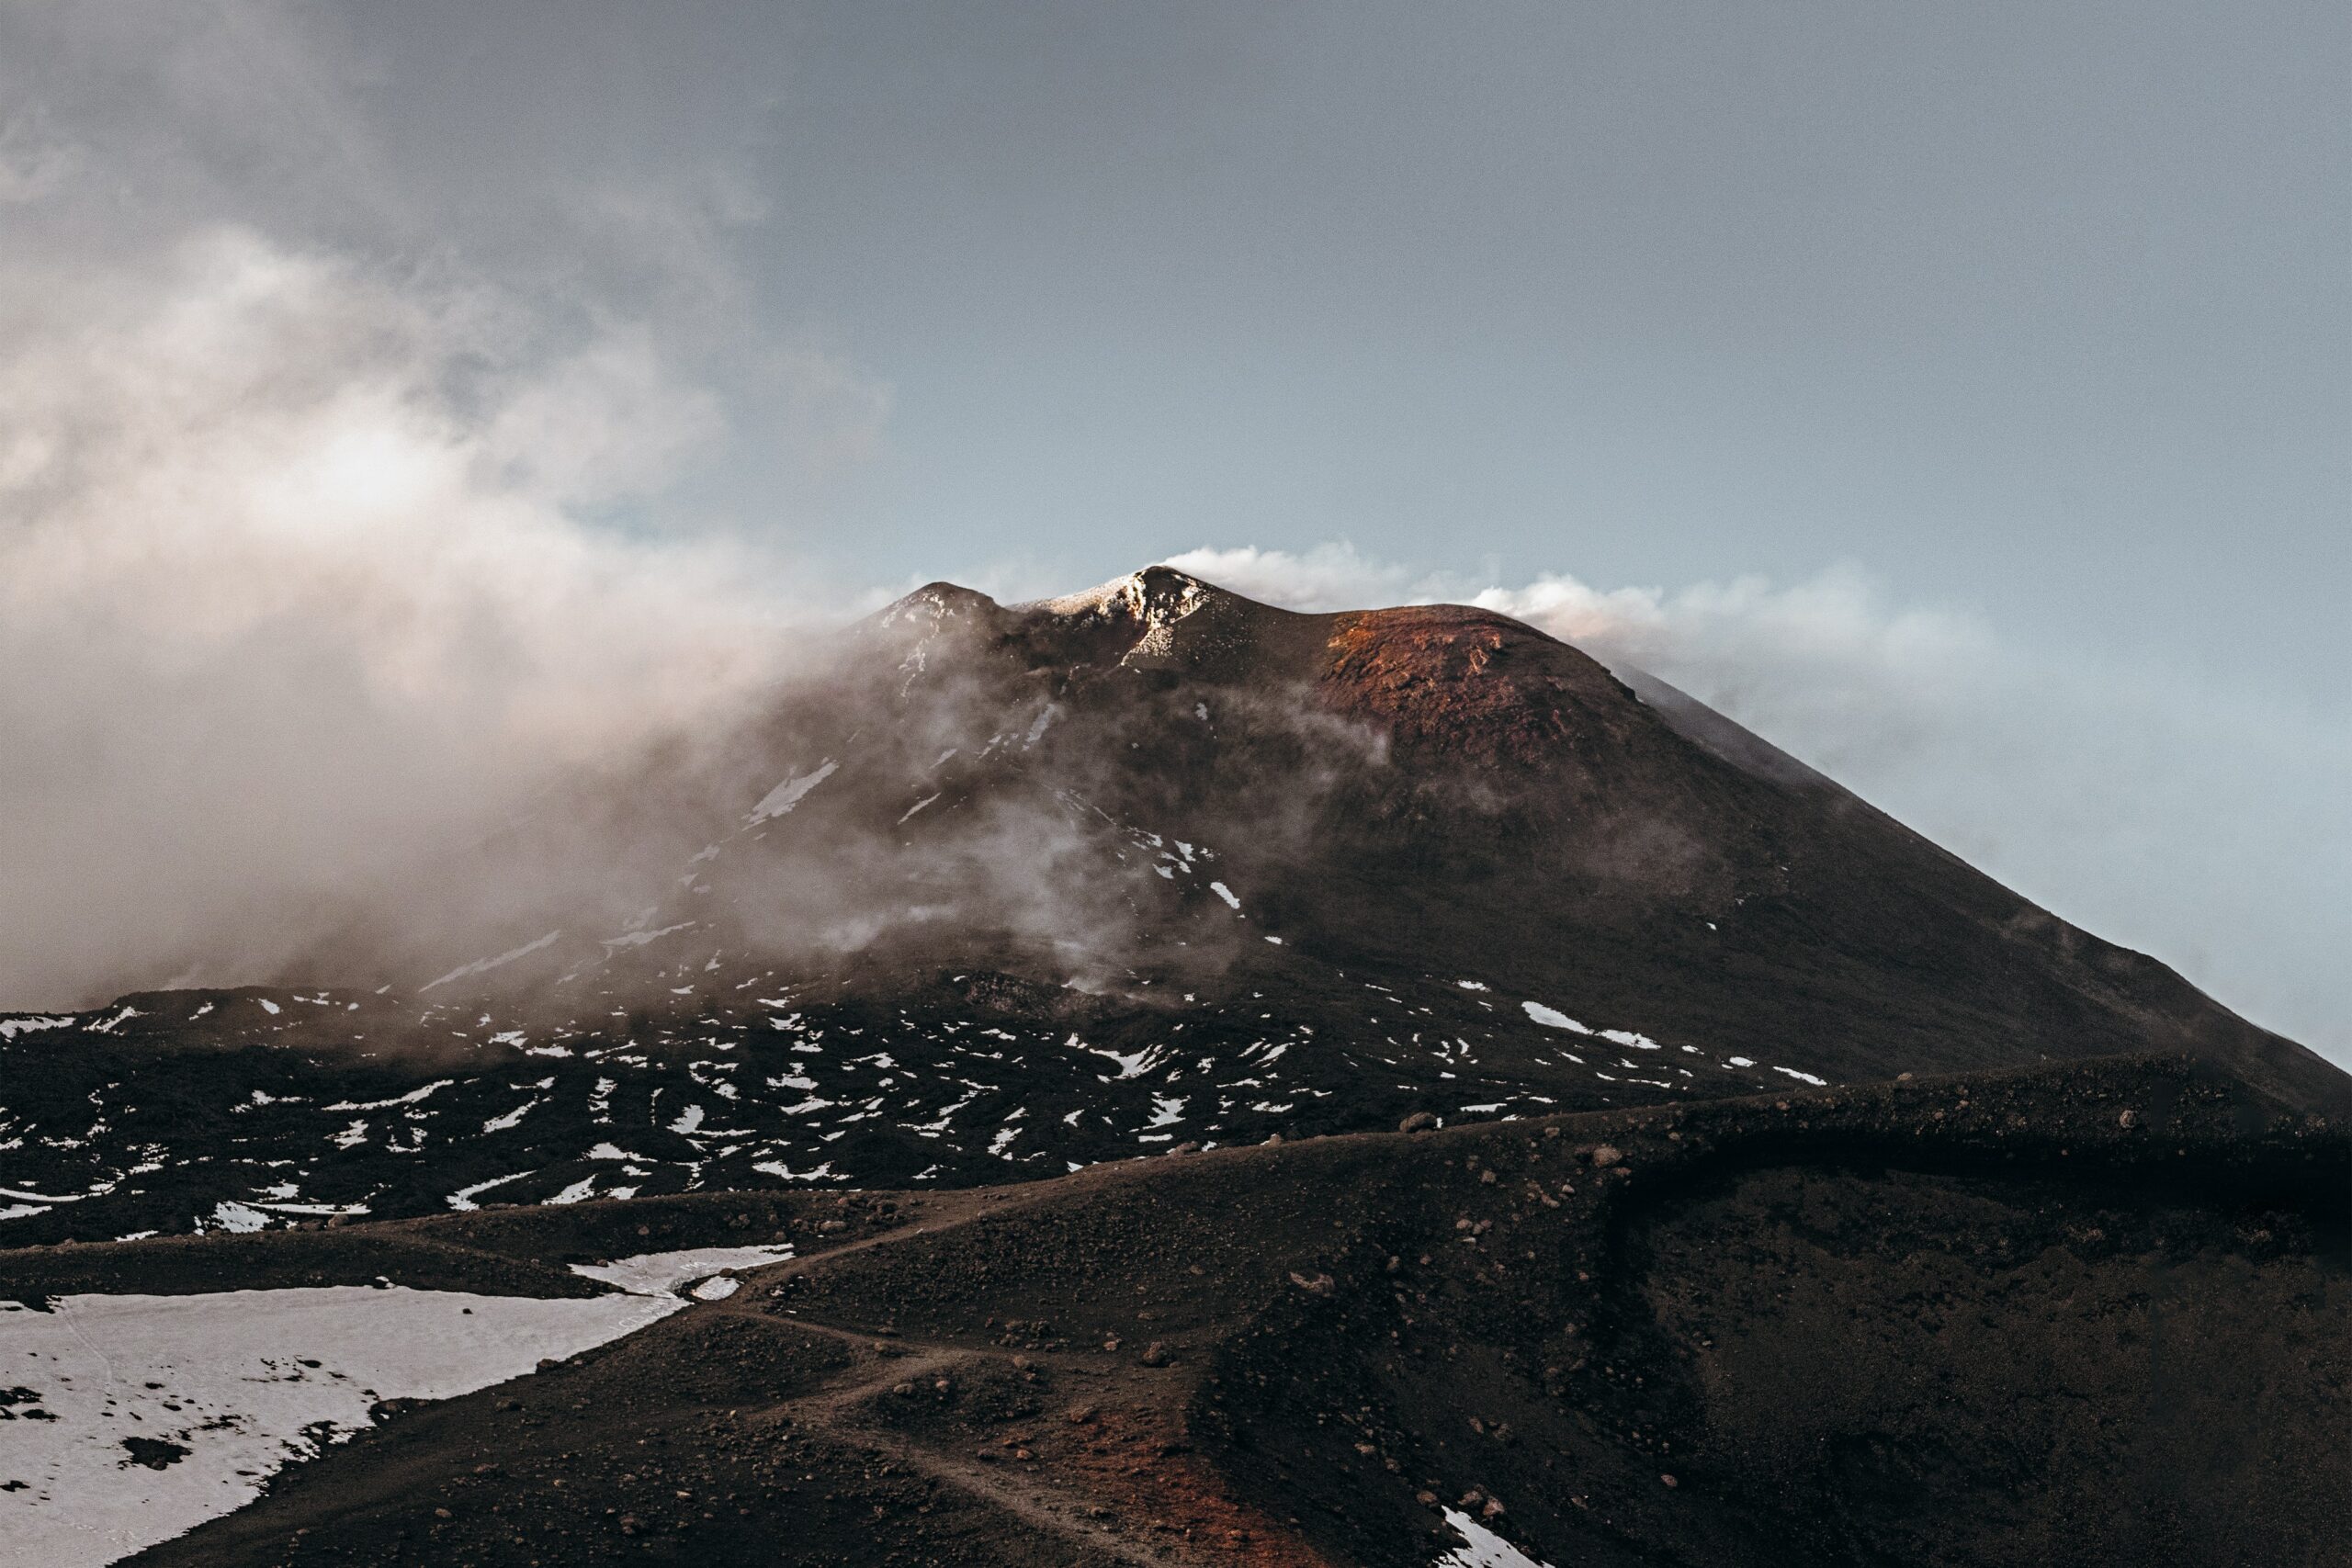 Foto di Asa Rogerche mostra Etna, semi avvolta da fumo e nuvole, colorata dalle vecchie colate laviche - foto utilizzata da geo etna explorer tour guidati privati e di gruppo sull'Etna escursioni in jeep